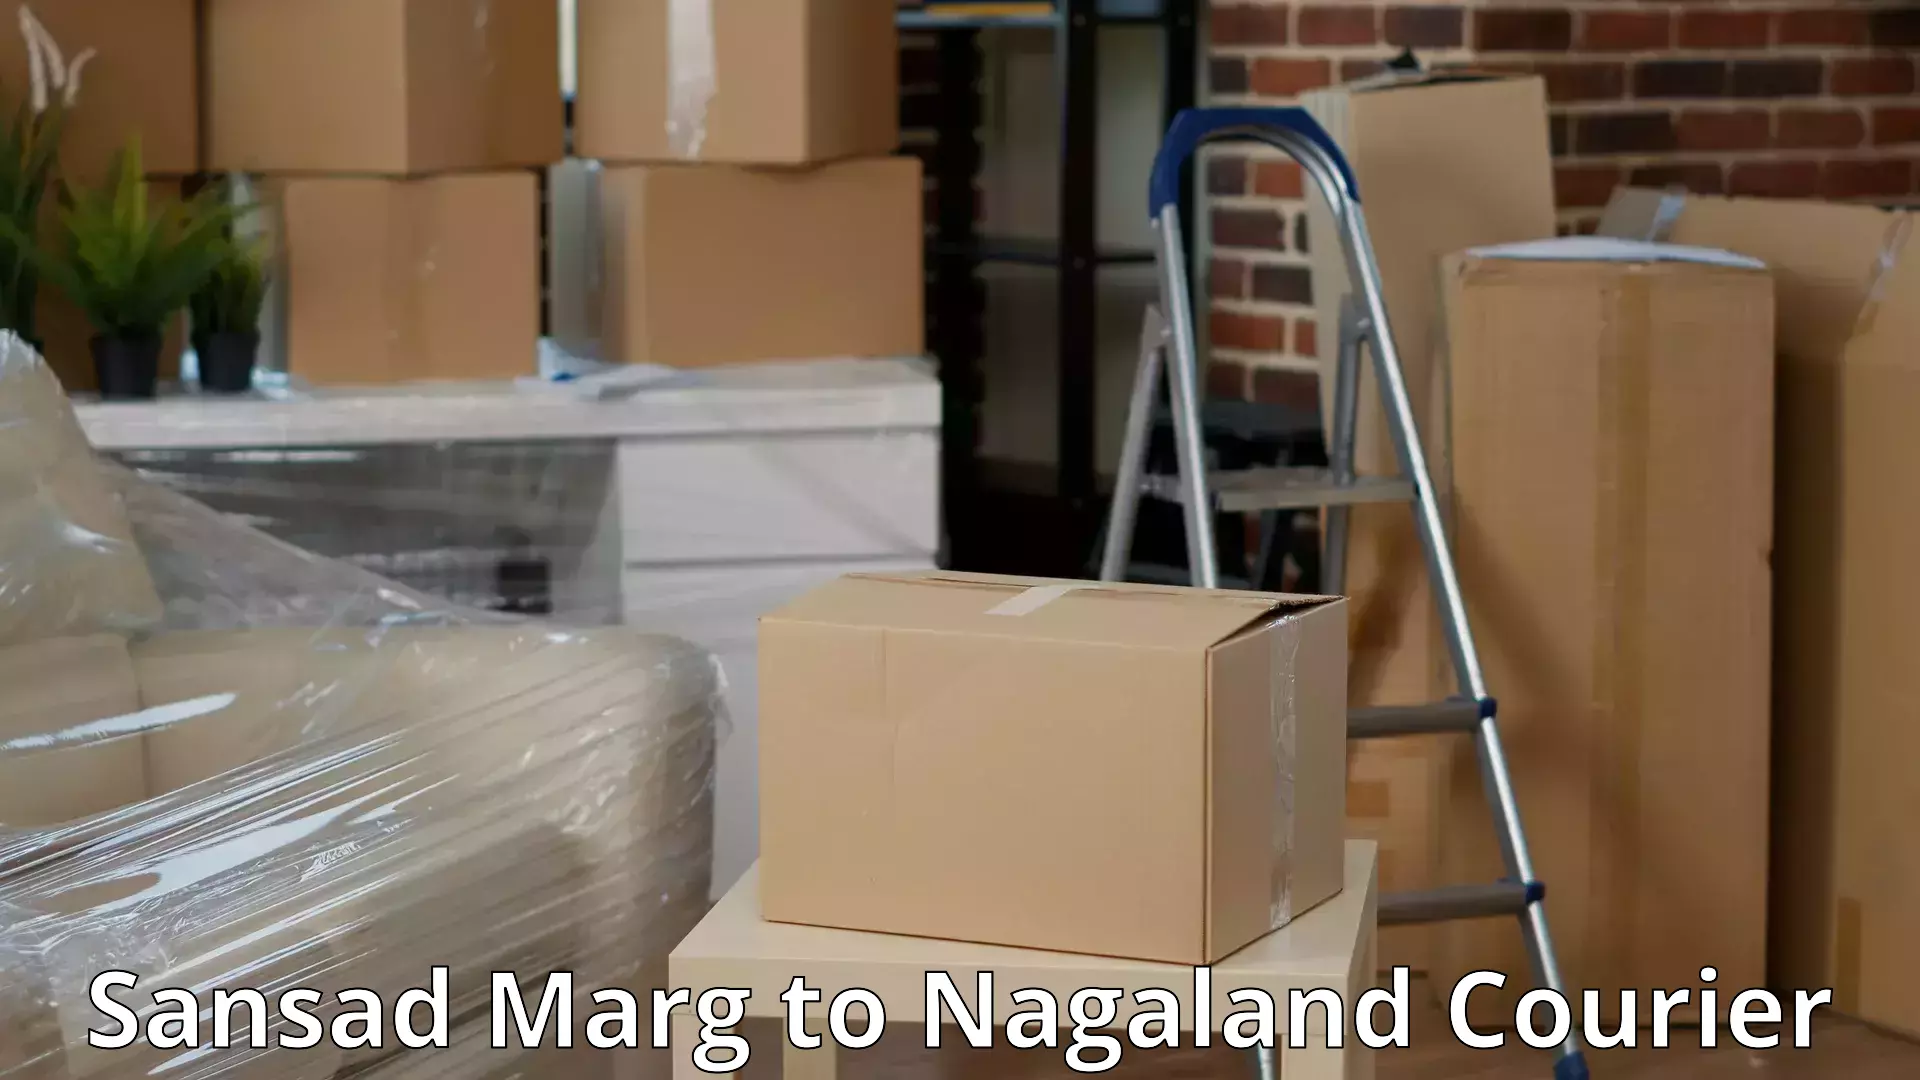 Professional moving company Sansad Marg to Longleng